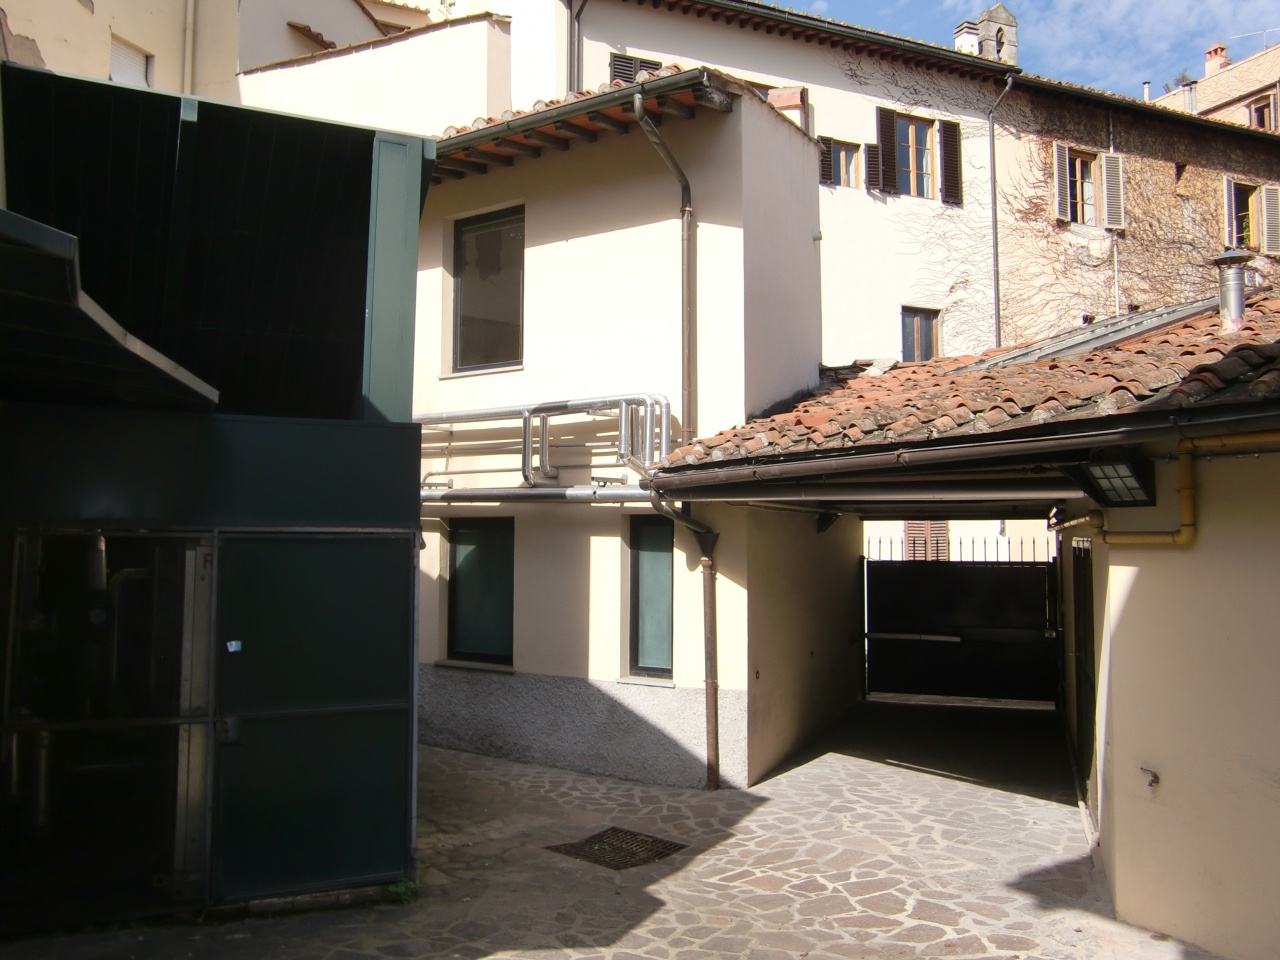 Ufficio / Studio in vendita a Firenze, 9999 locali, zona Località: PortaaPrato, prezzo € 1.850.000 | PortaleAgenzieImmobiliari.it